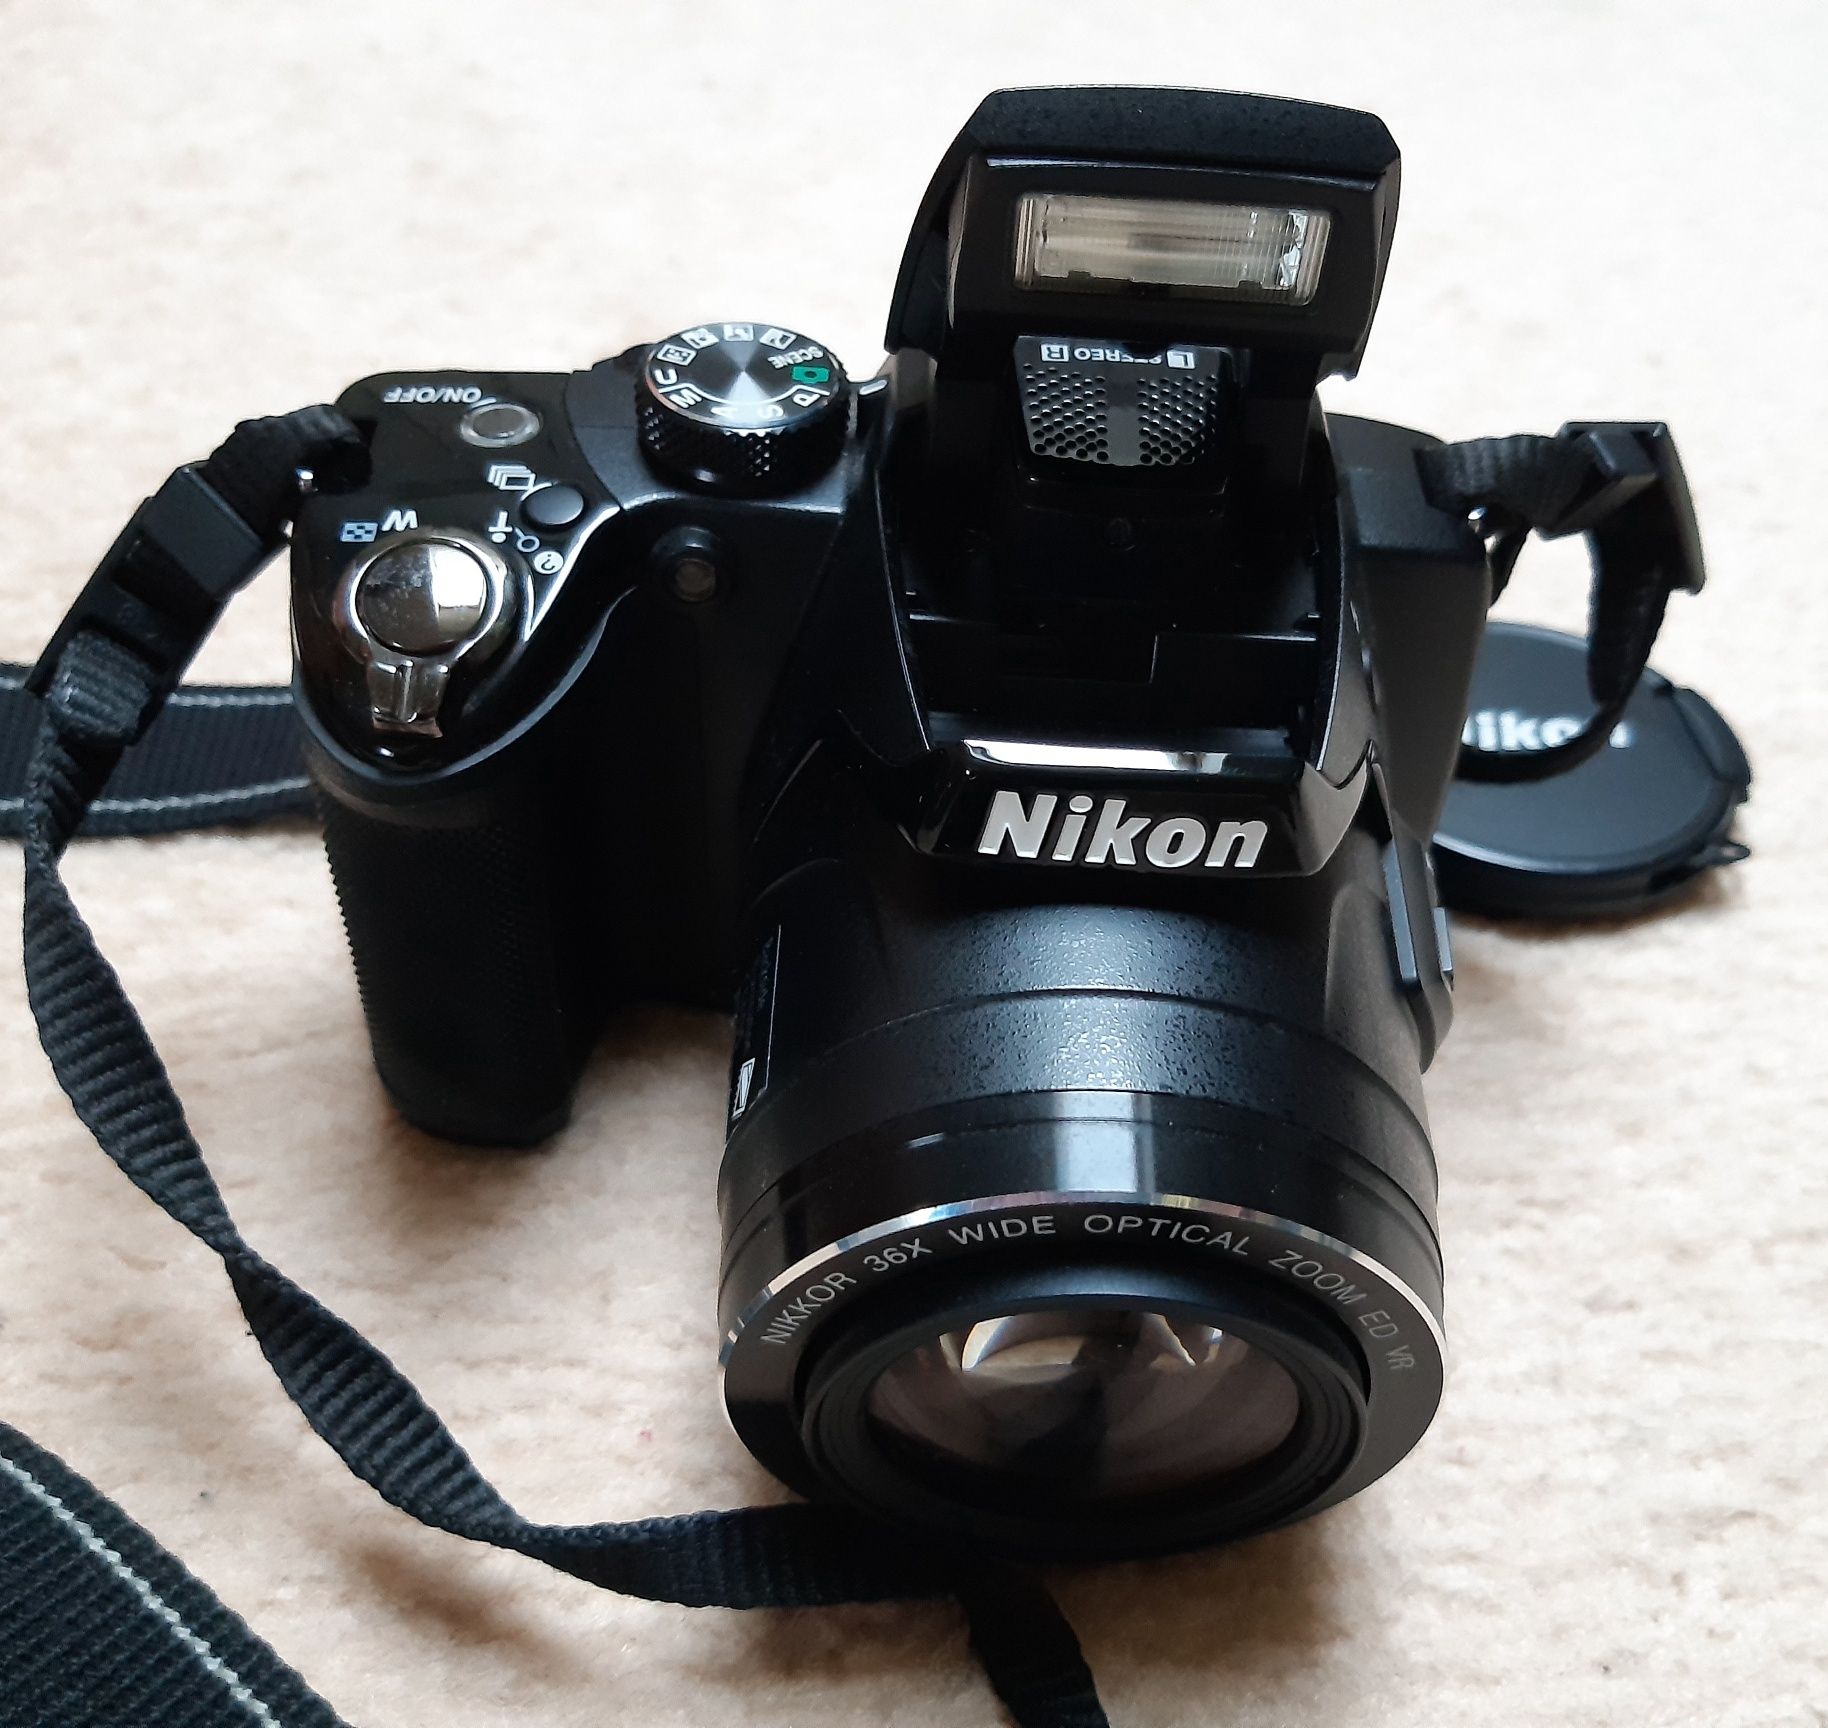 Aparat cyfrowy Nikon P500 Coolpix czarny - jak nowy